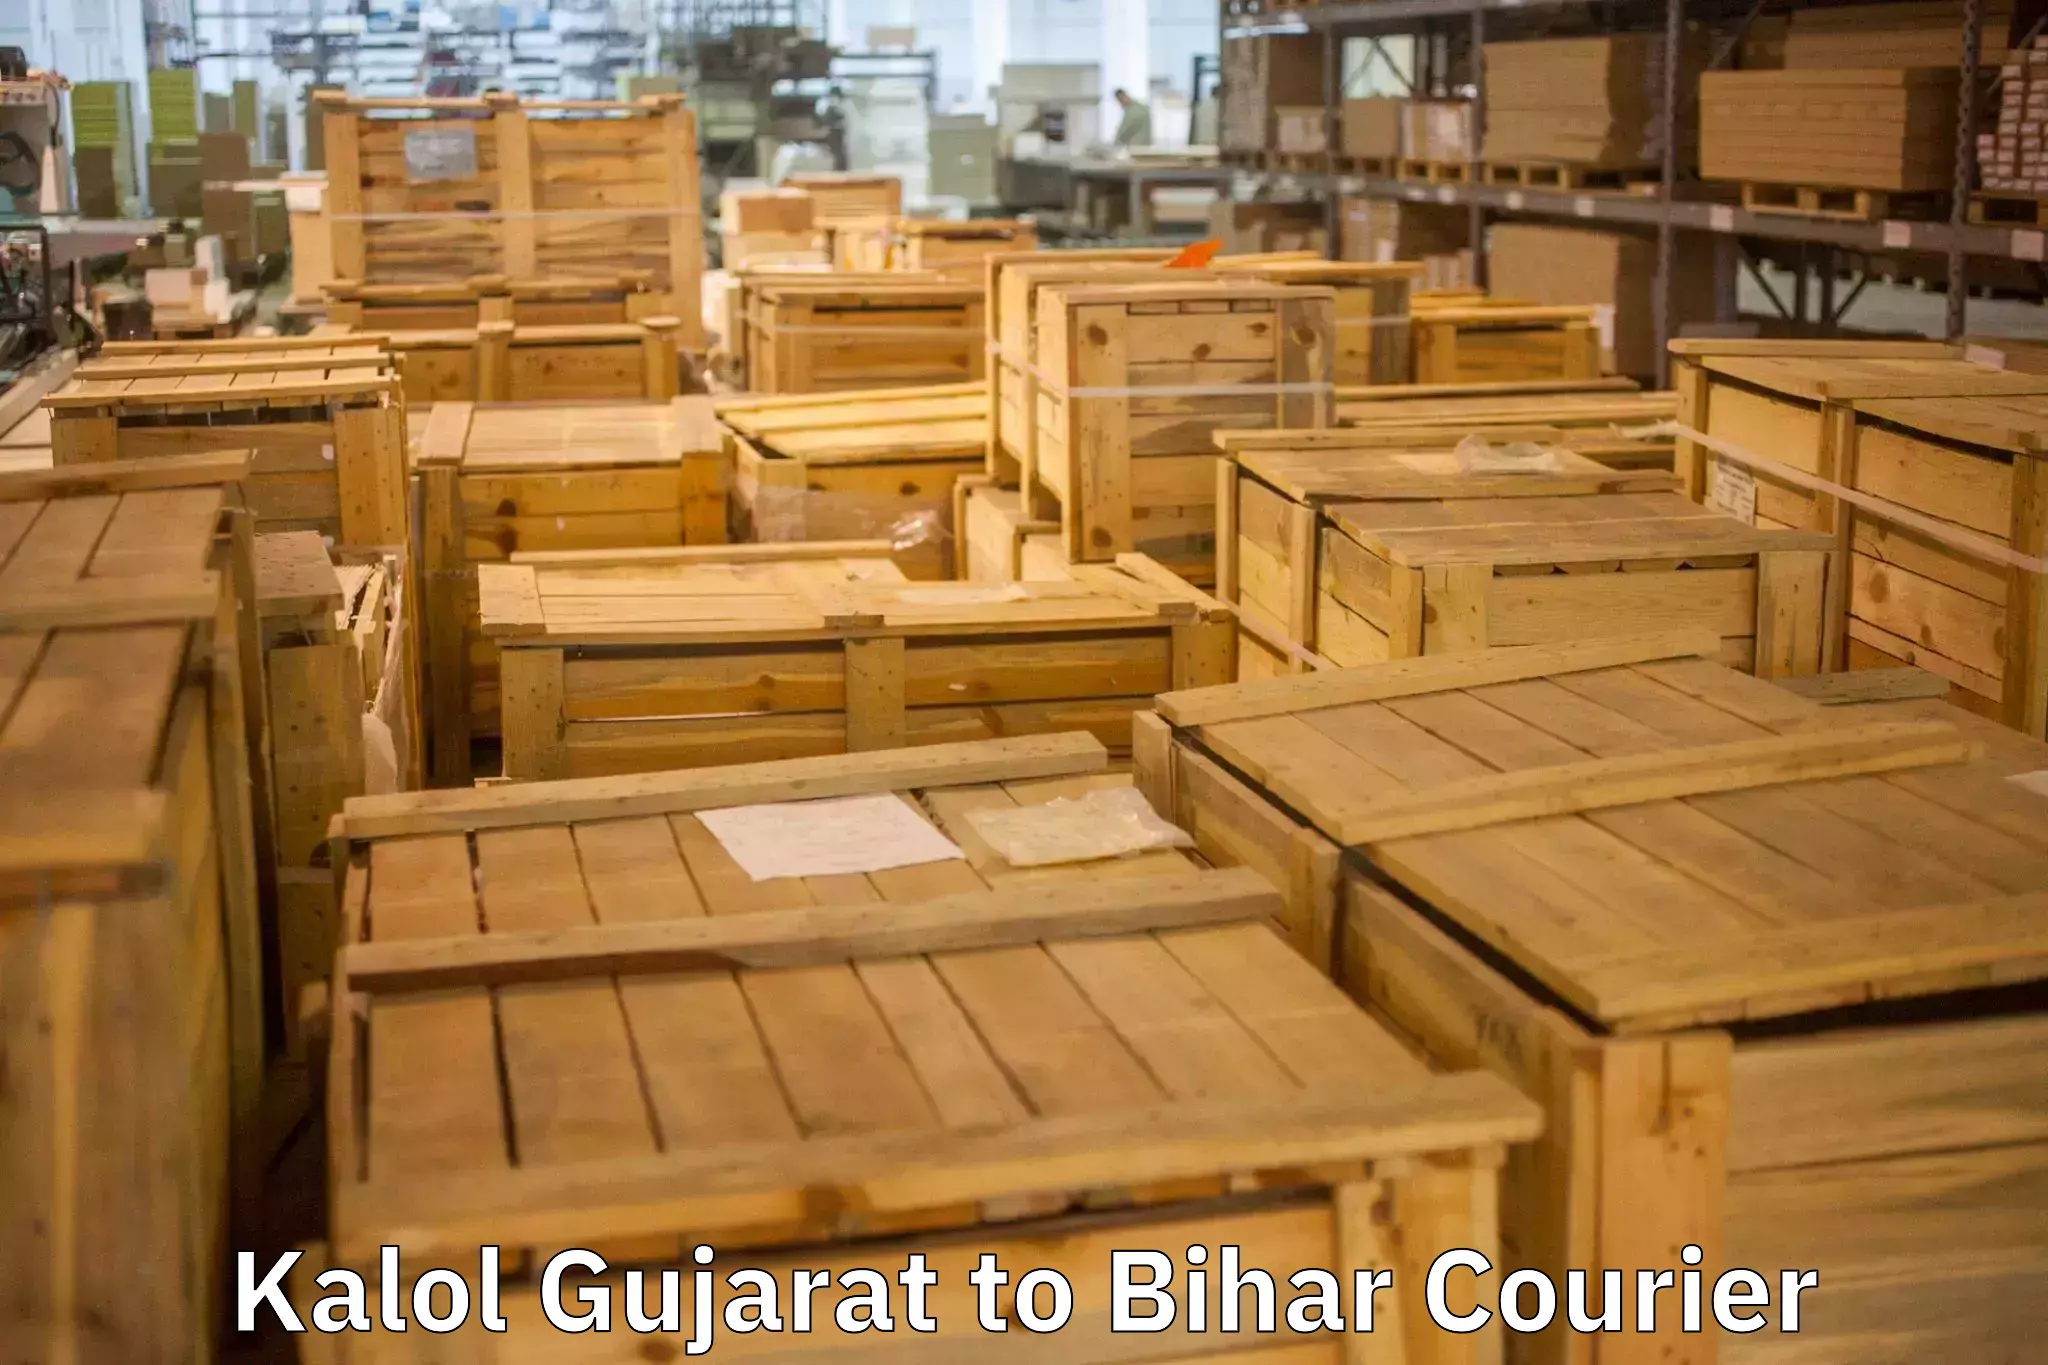 Furniture transport service Kalol Gujarat to Naugachhia